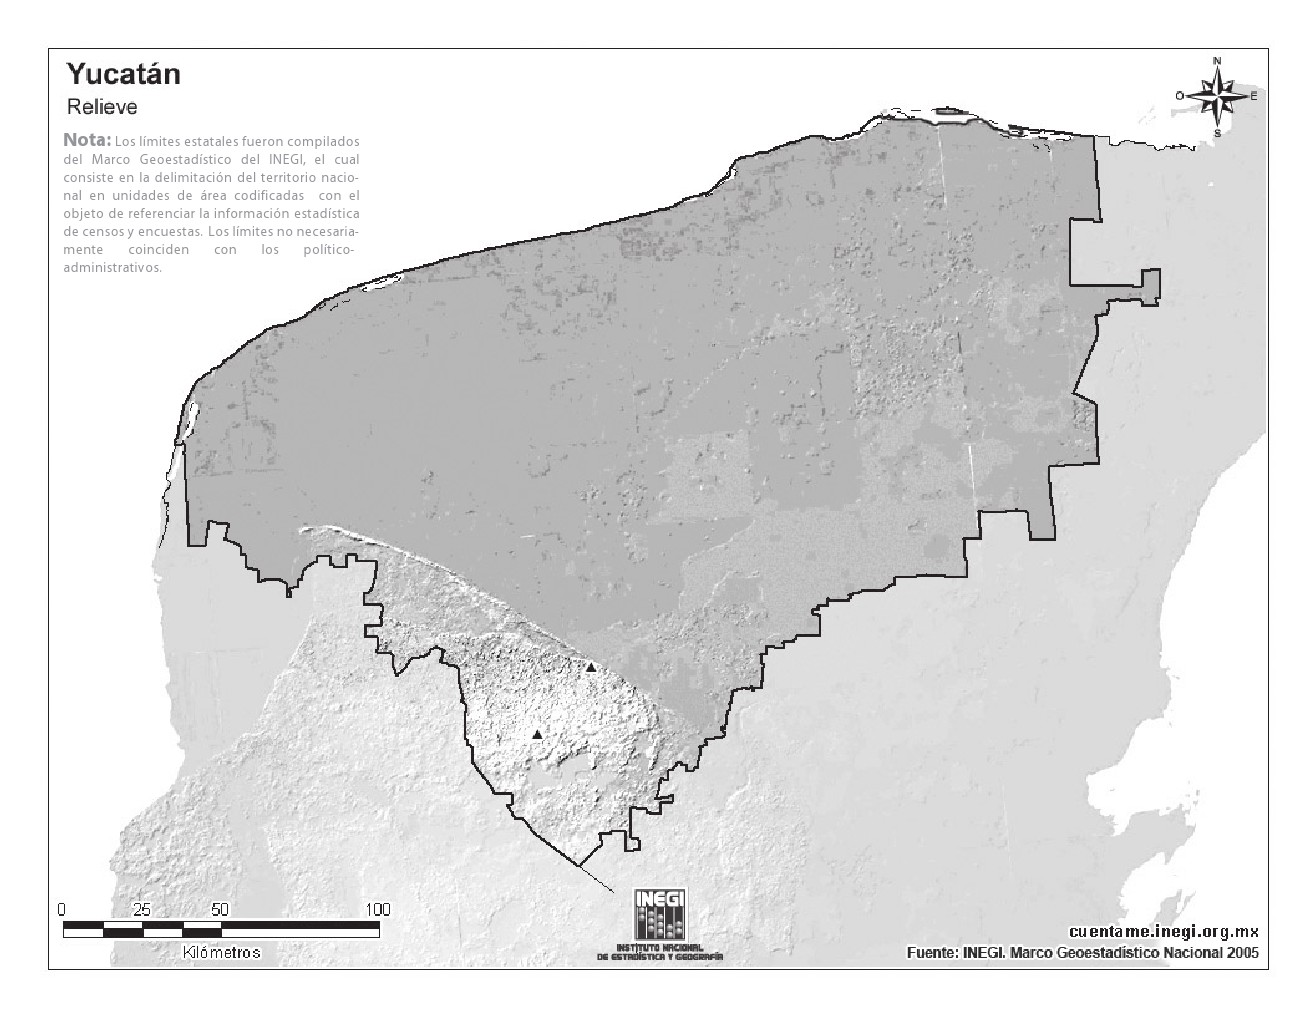 Mapa mudo de montañas de Yucatán. INEGI de México